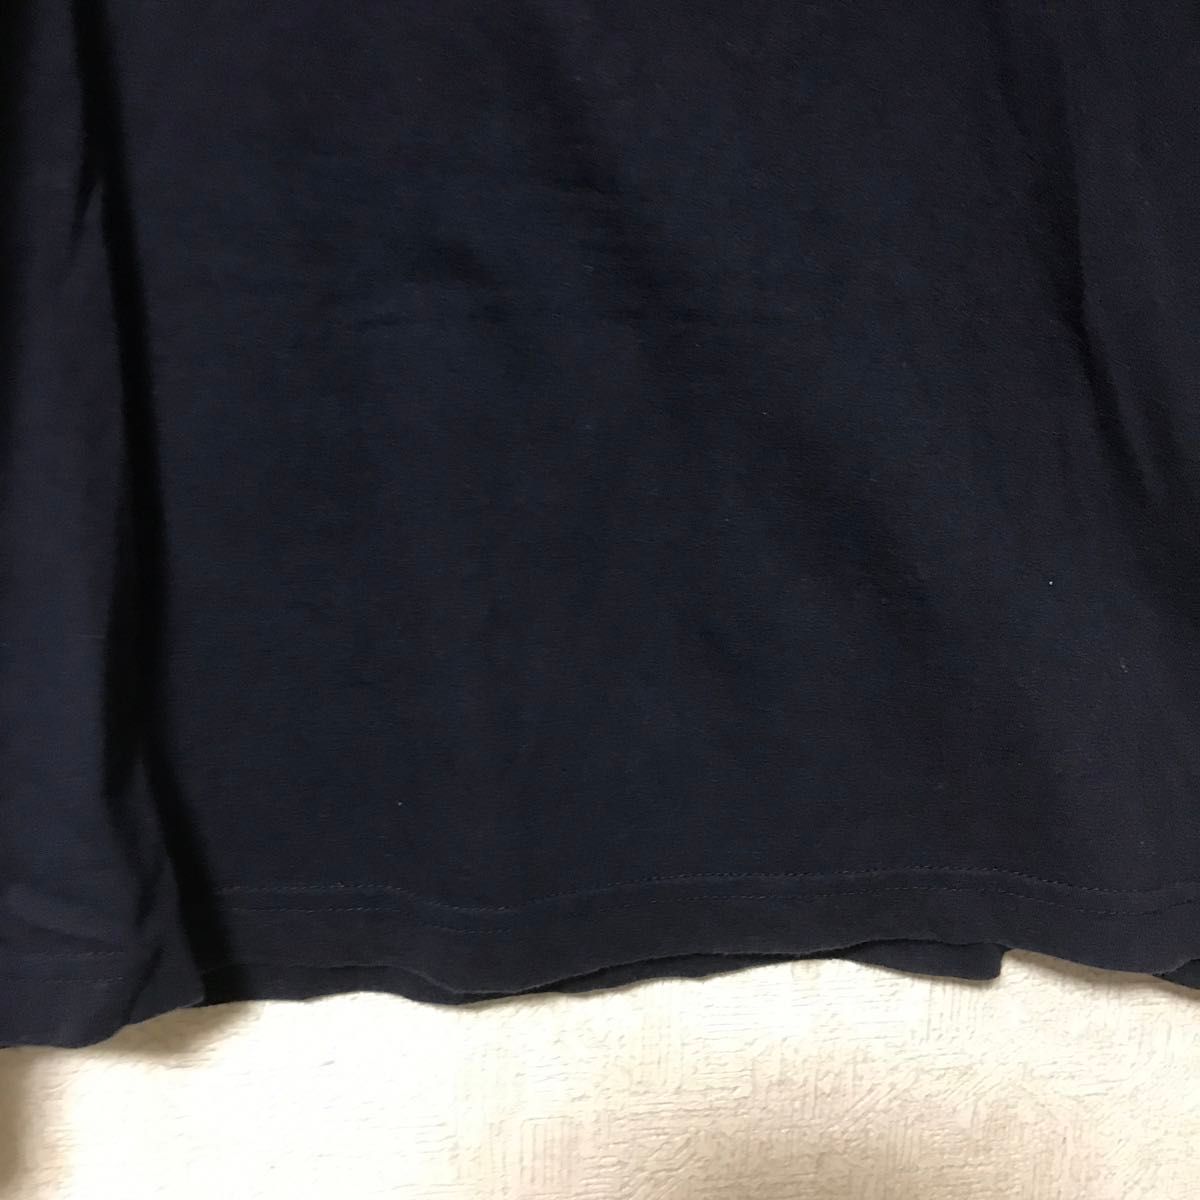 【GUESS】 Tシャツ 半袖 ネイビー トライアングルロゴ XL ユニセックス